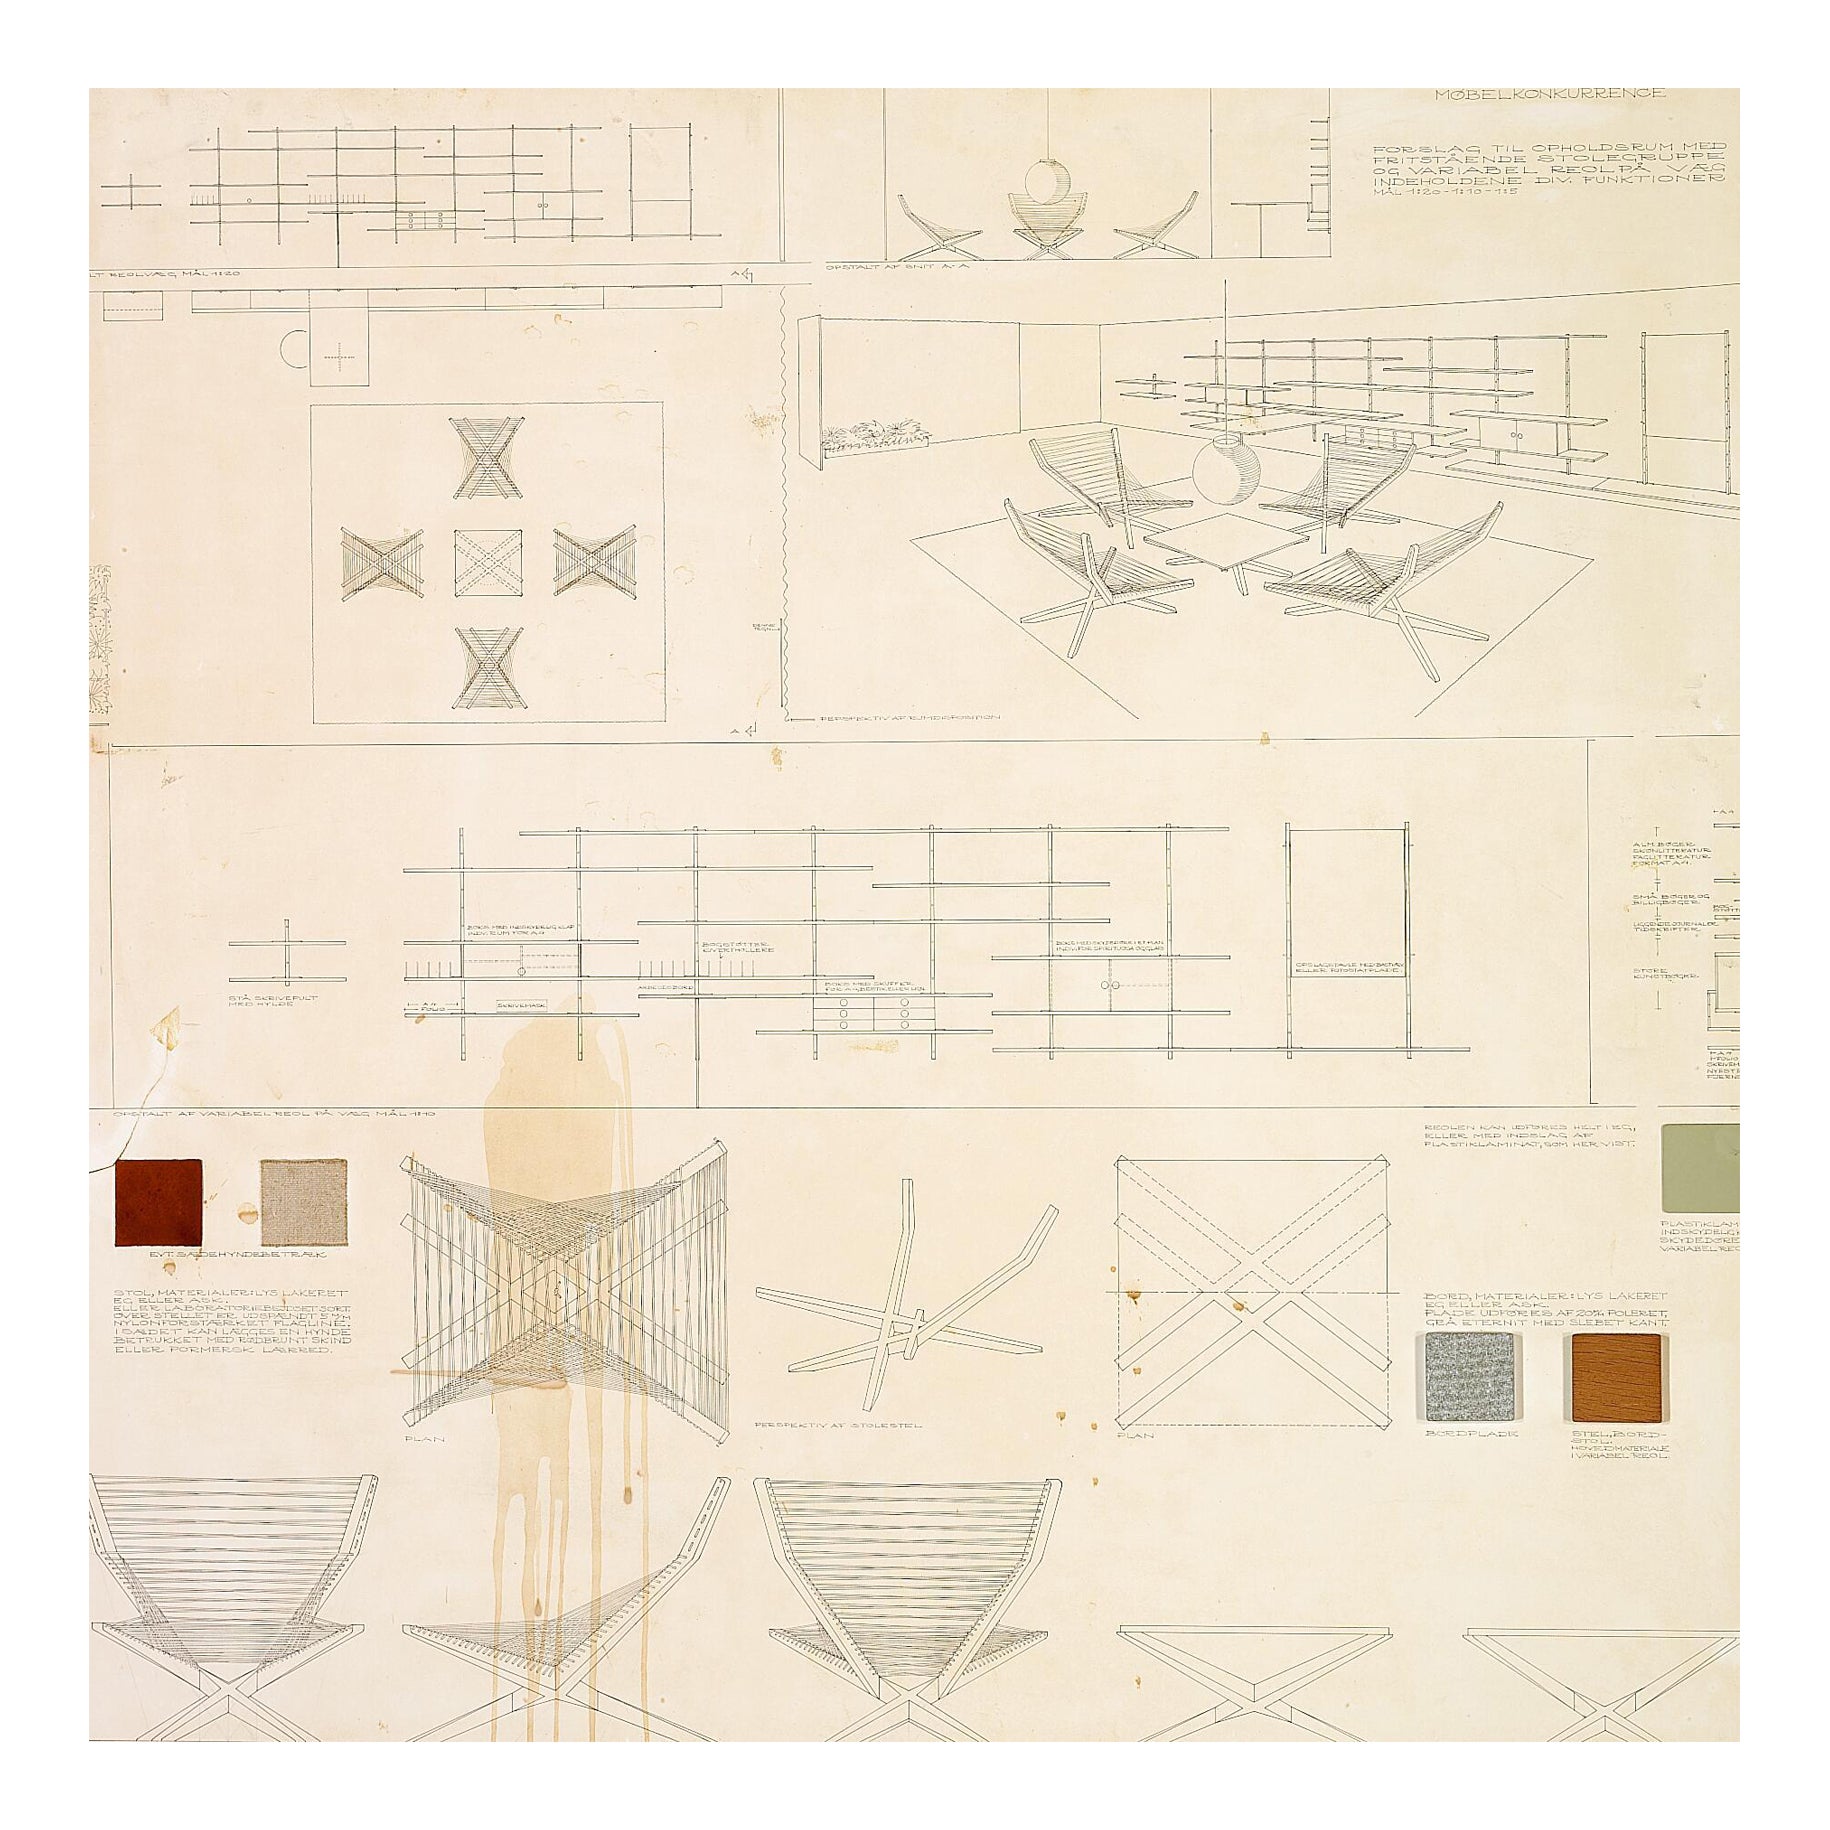 Jørgen Høvelskov: Competition entries, two boards of sketches of furniture 1966